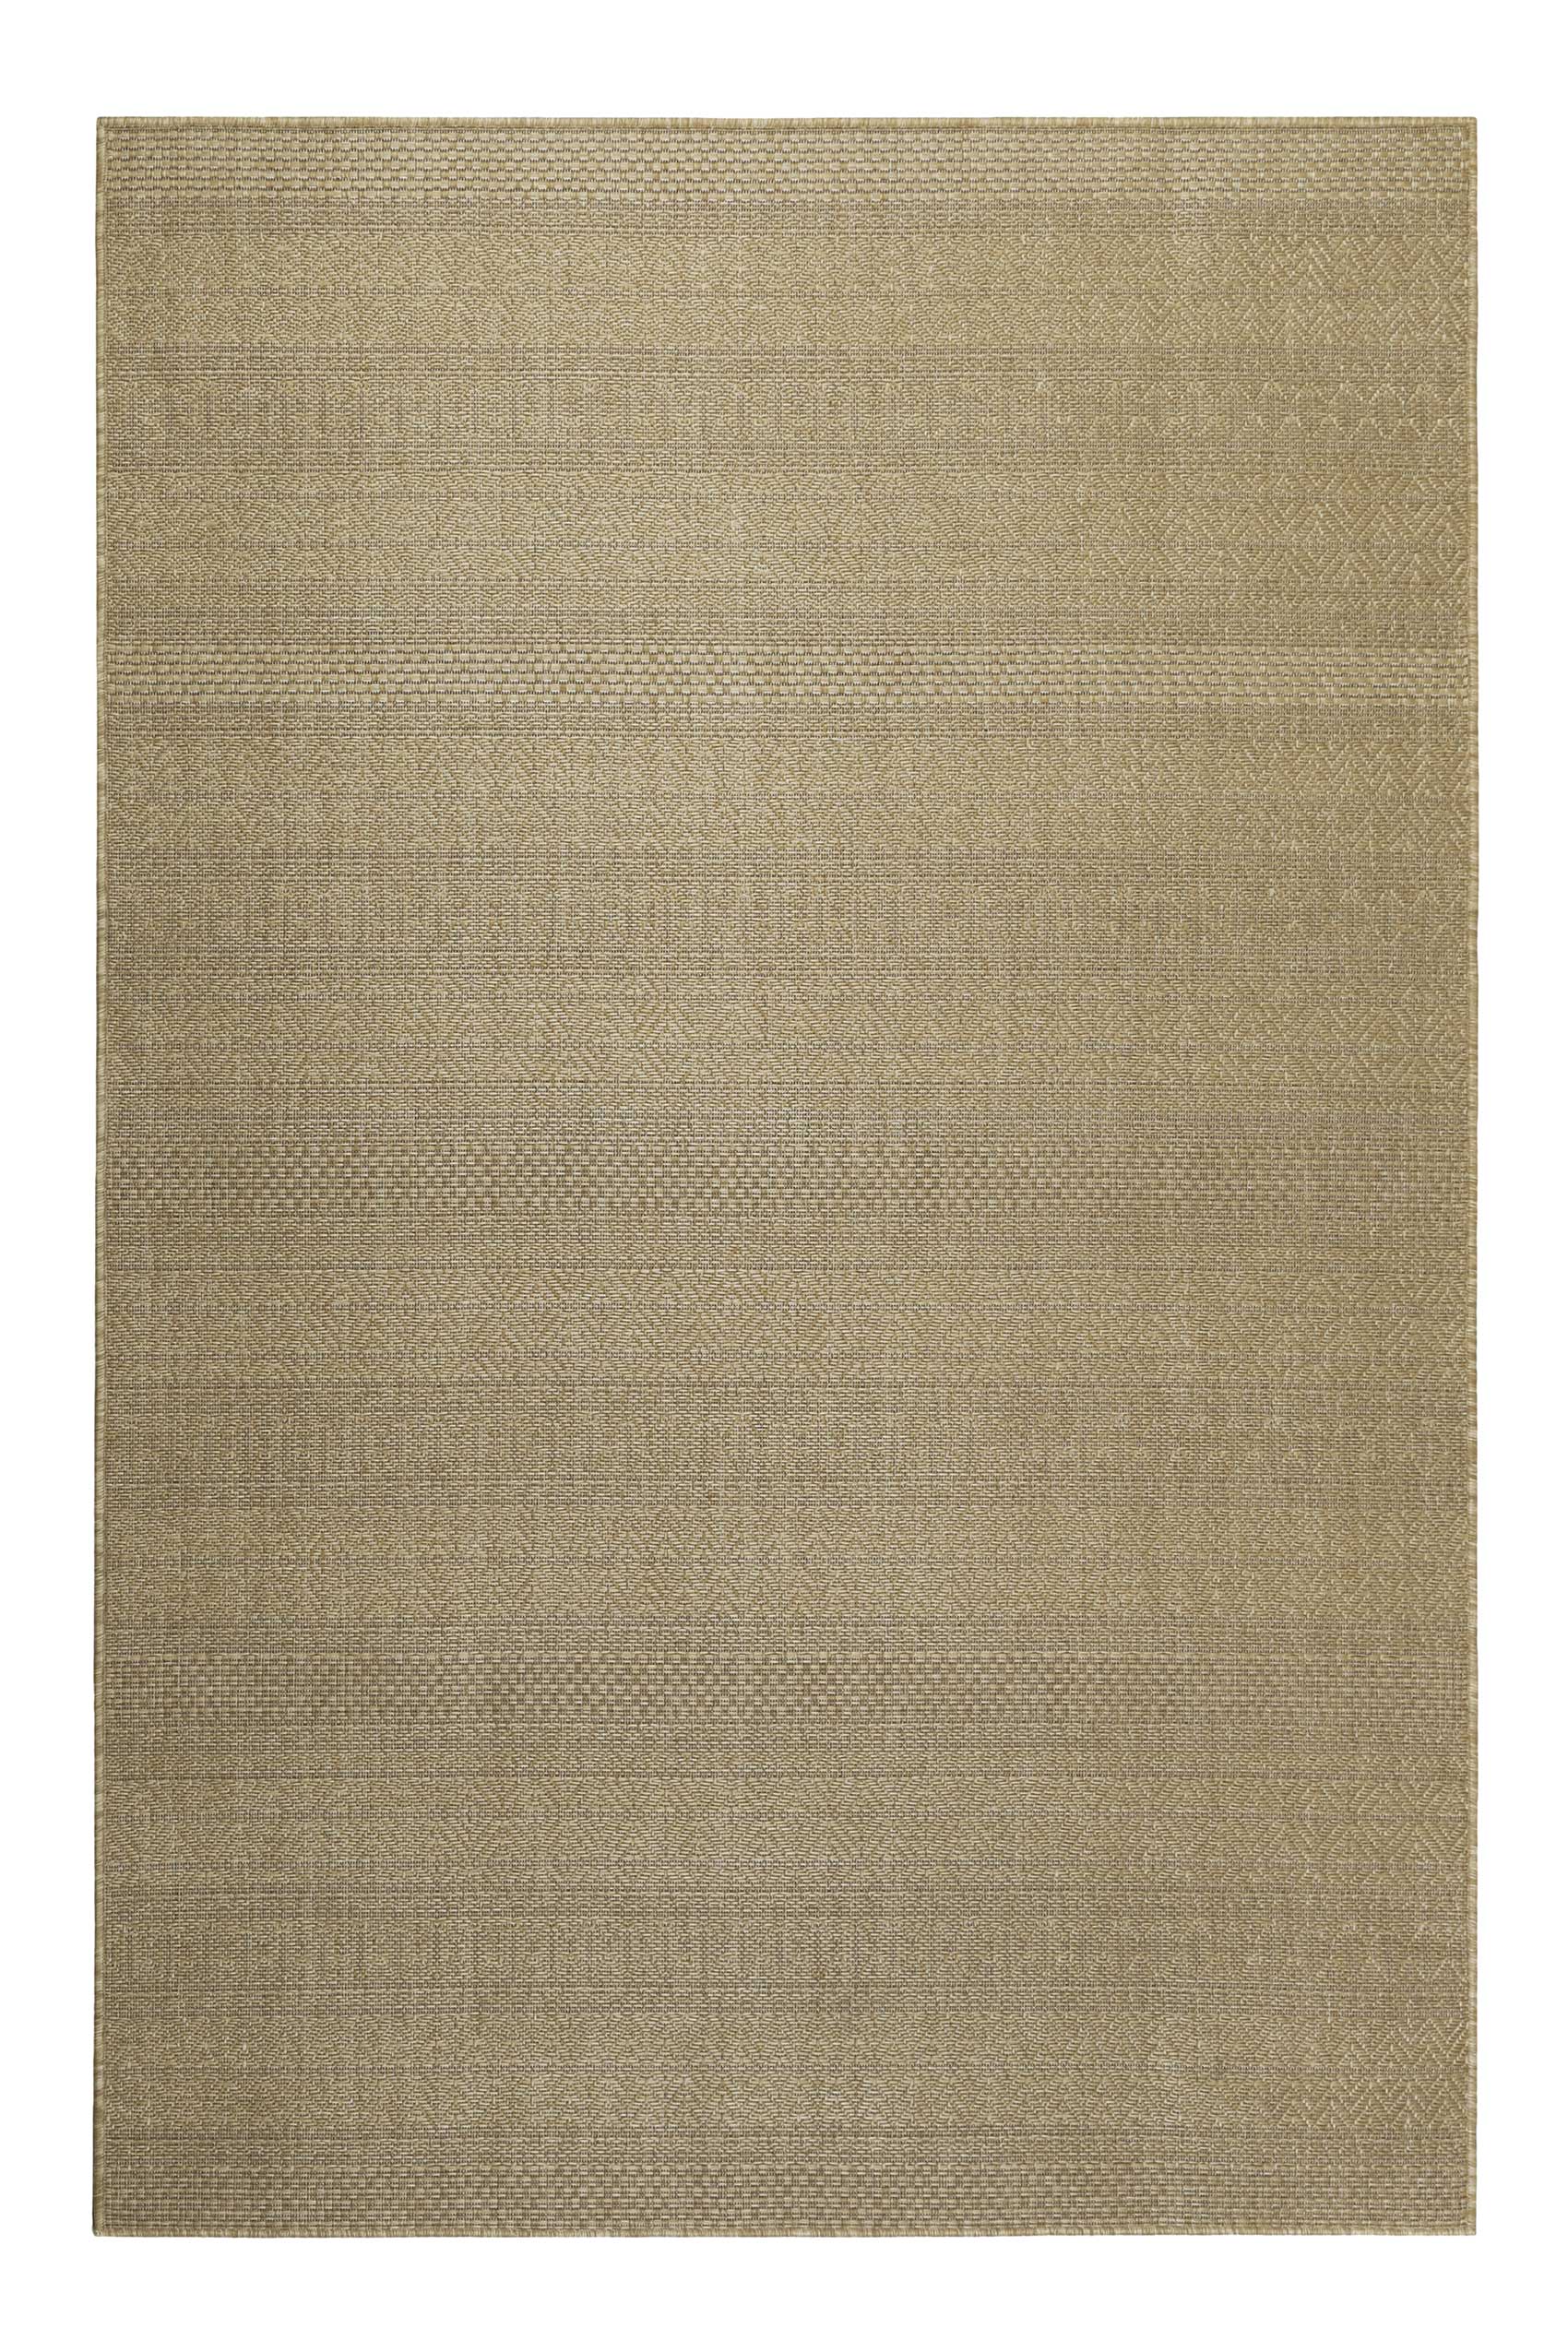 Tapis interieur/exterieur beige sable avec motif 80x150